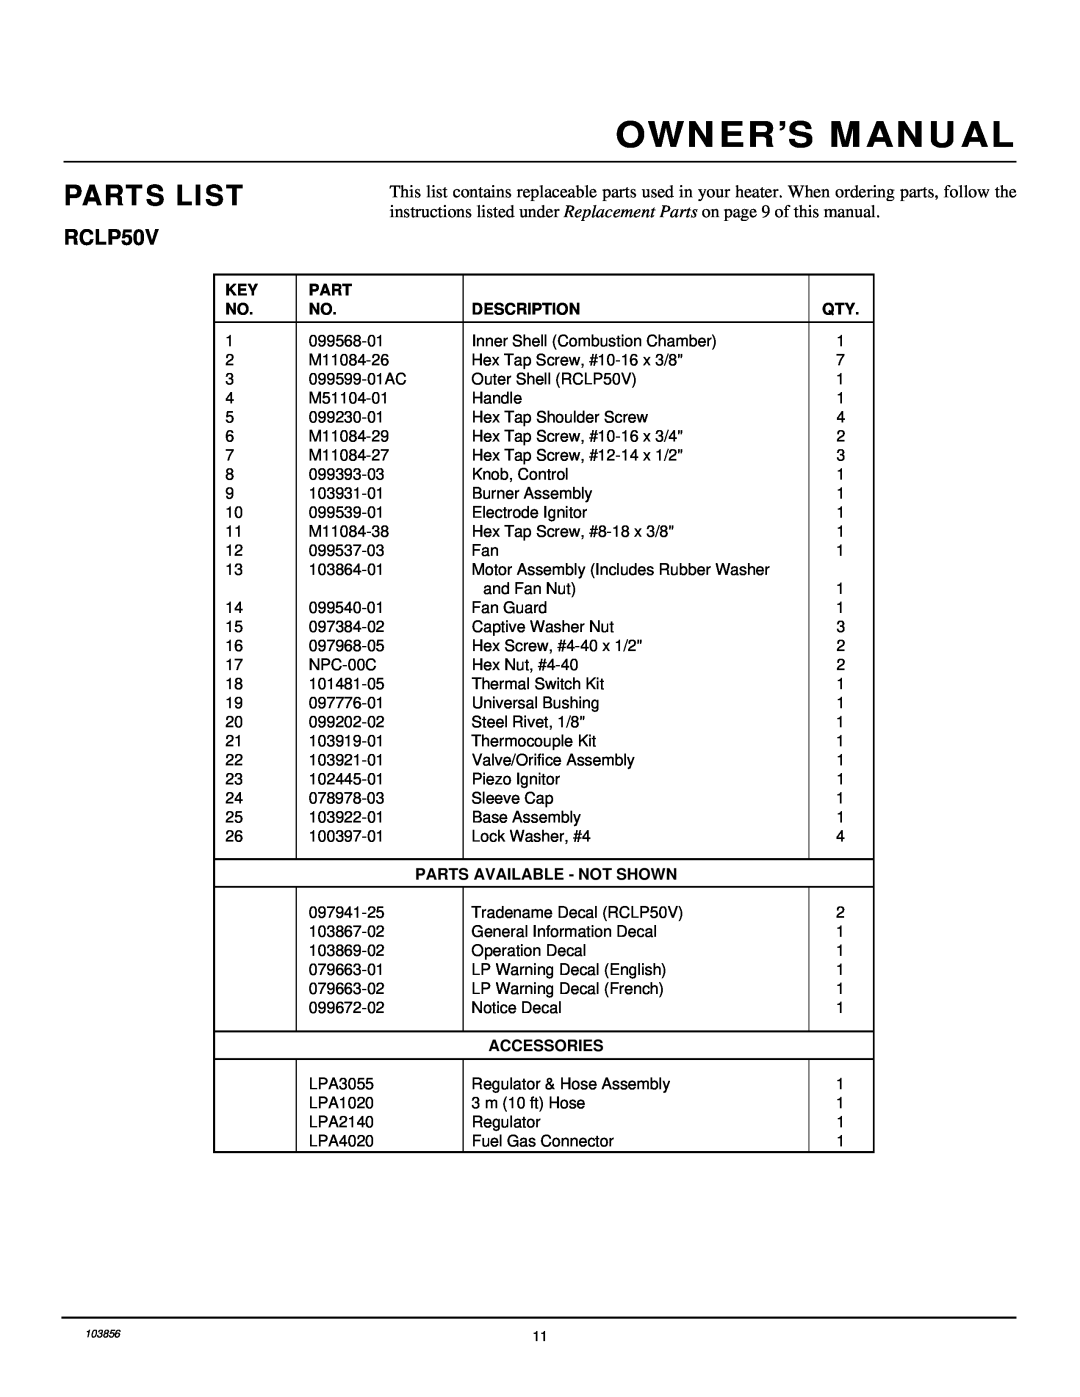 Desa RCLP50V owner manual Parts List, Description, Parts Available - Not Shown, Accessories 